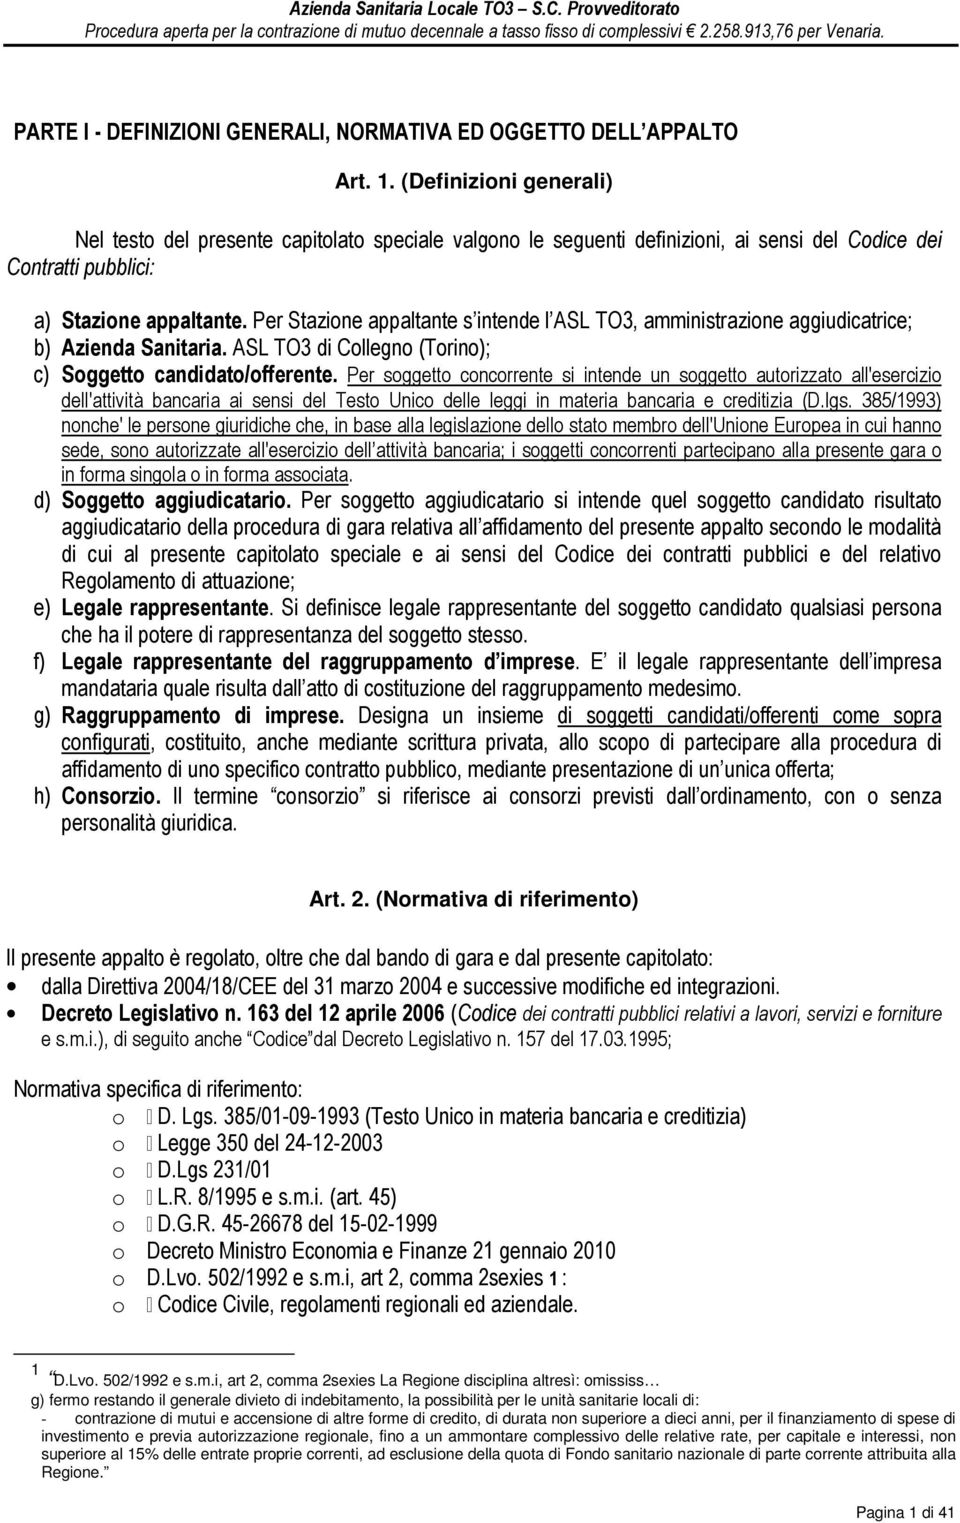 Per Stazione appaltante s intende l ASL TO3, amministrazione aggiudicatrice; b) Azienda Sanitaria. ASL TO3 di Collegno (Torino); c) Soggetto candidato/offerente.